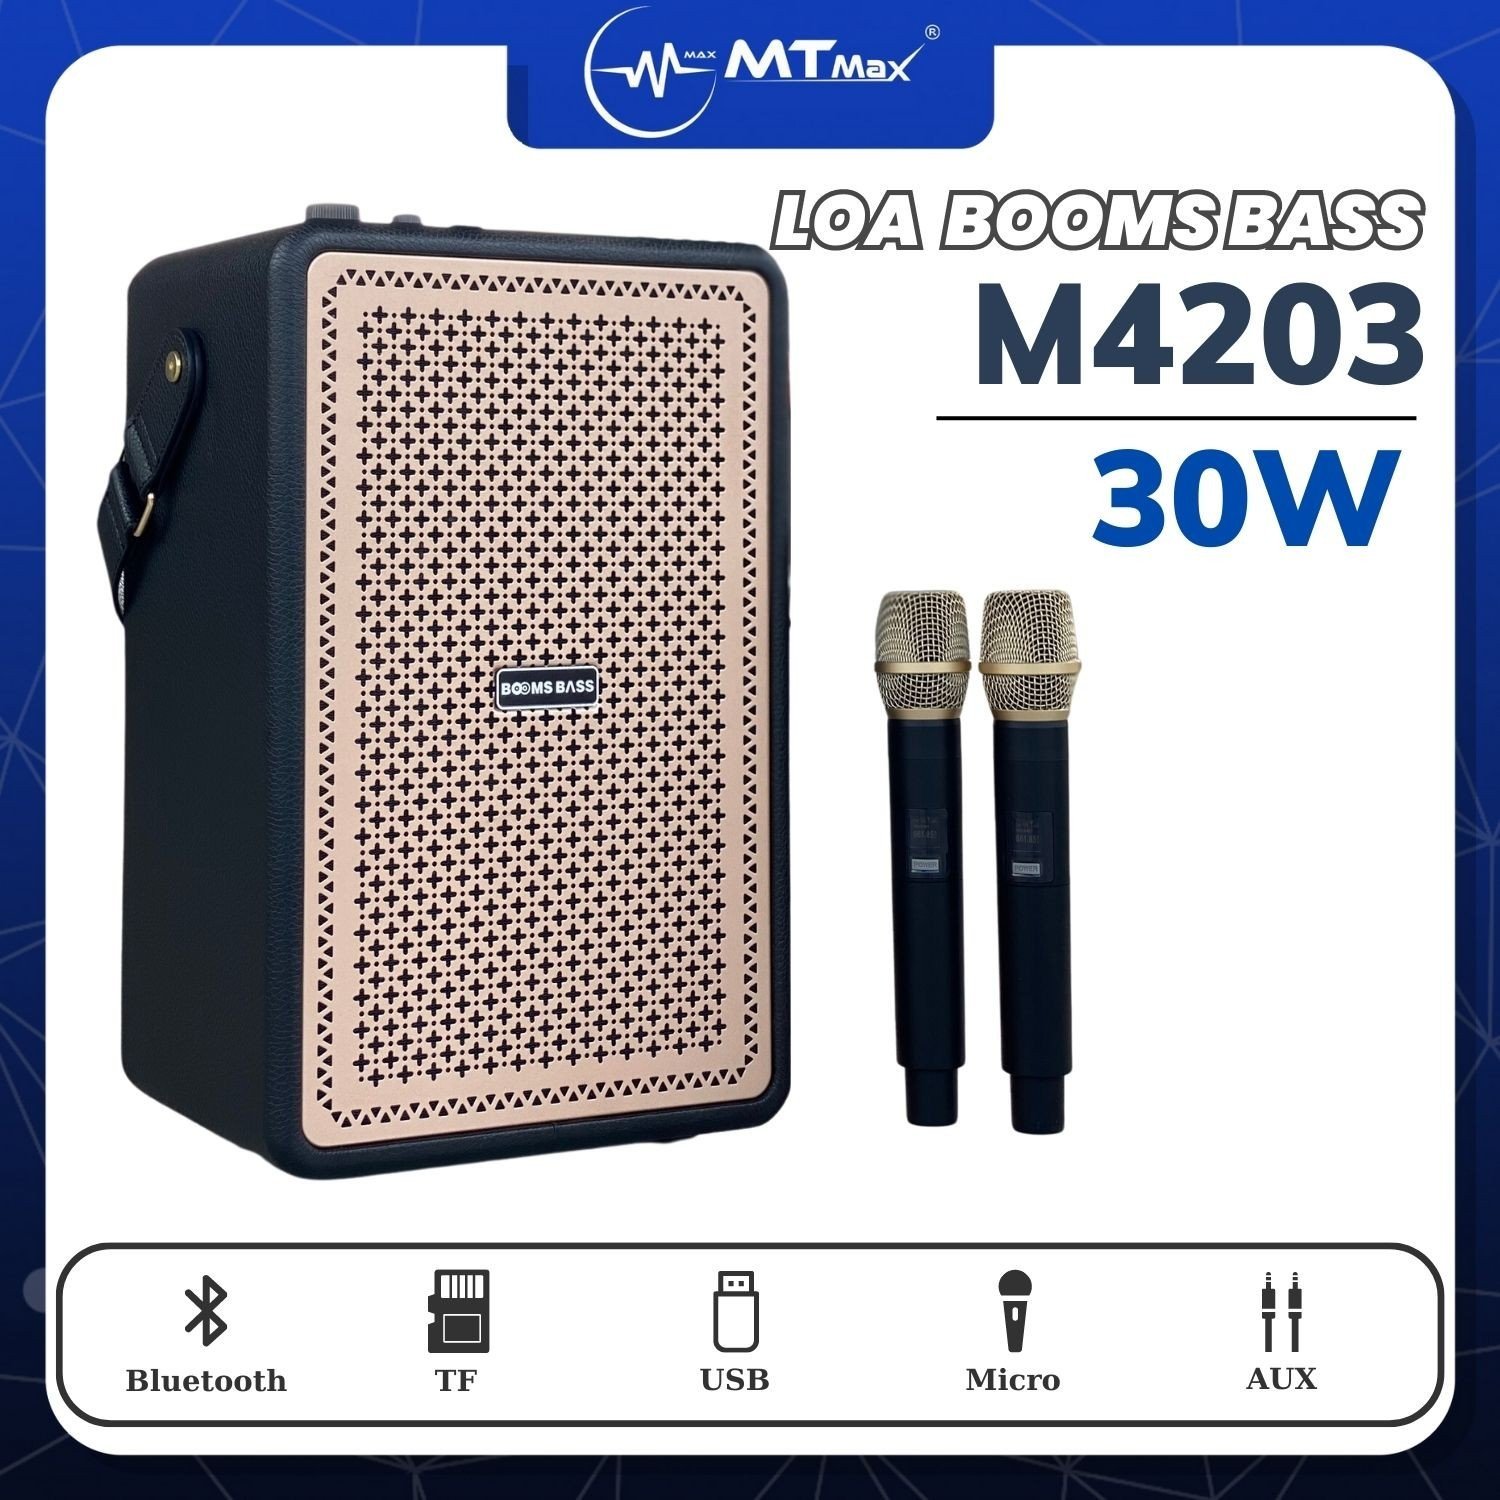 Loa Bluetooth Karaoke Booms Bass M4203 Bass Mạnh, Kèm 2 Micro Không Dây Hàng Chính Hãng Bảo Hành 12 Tháng